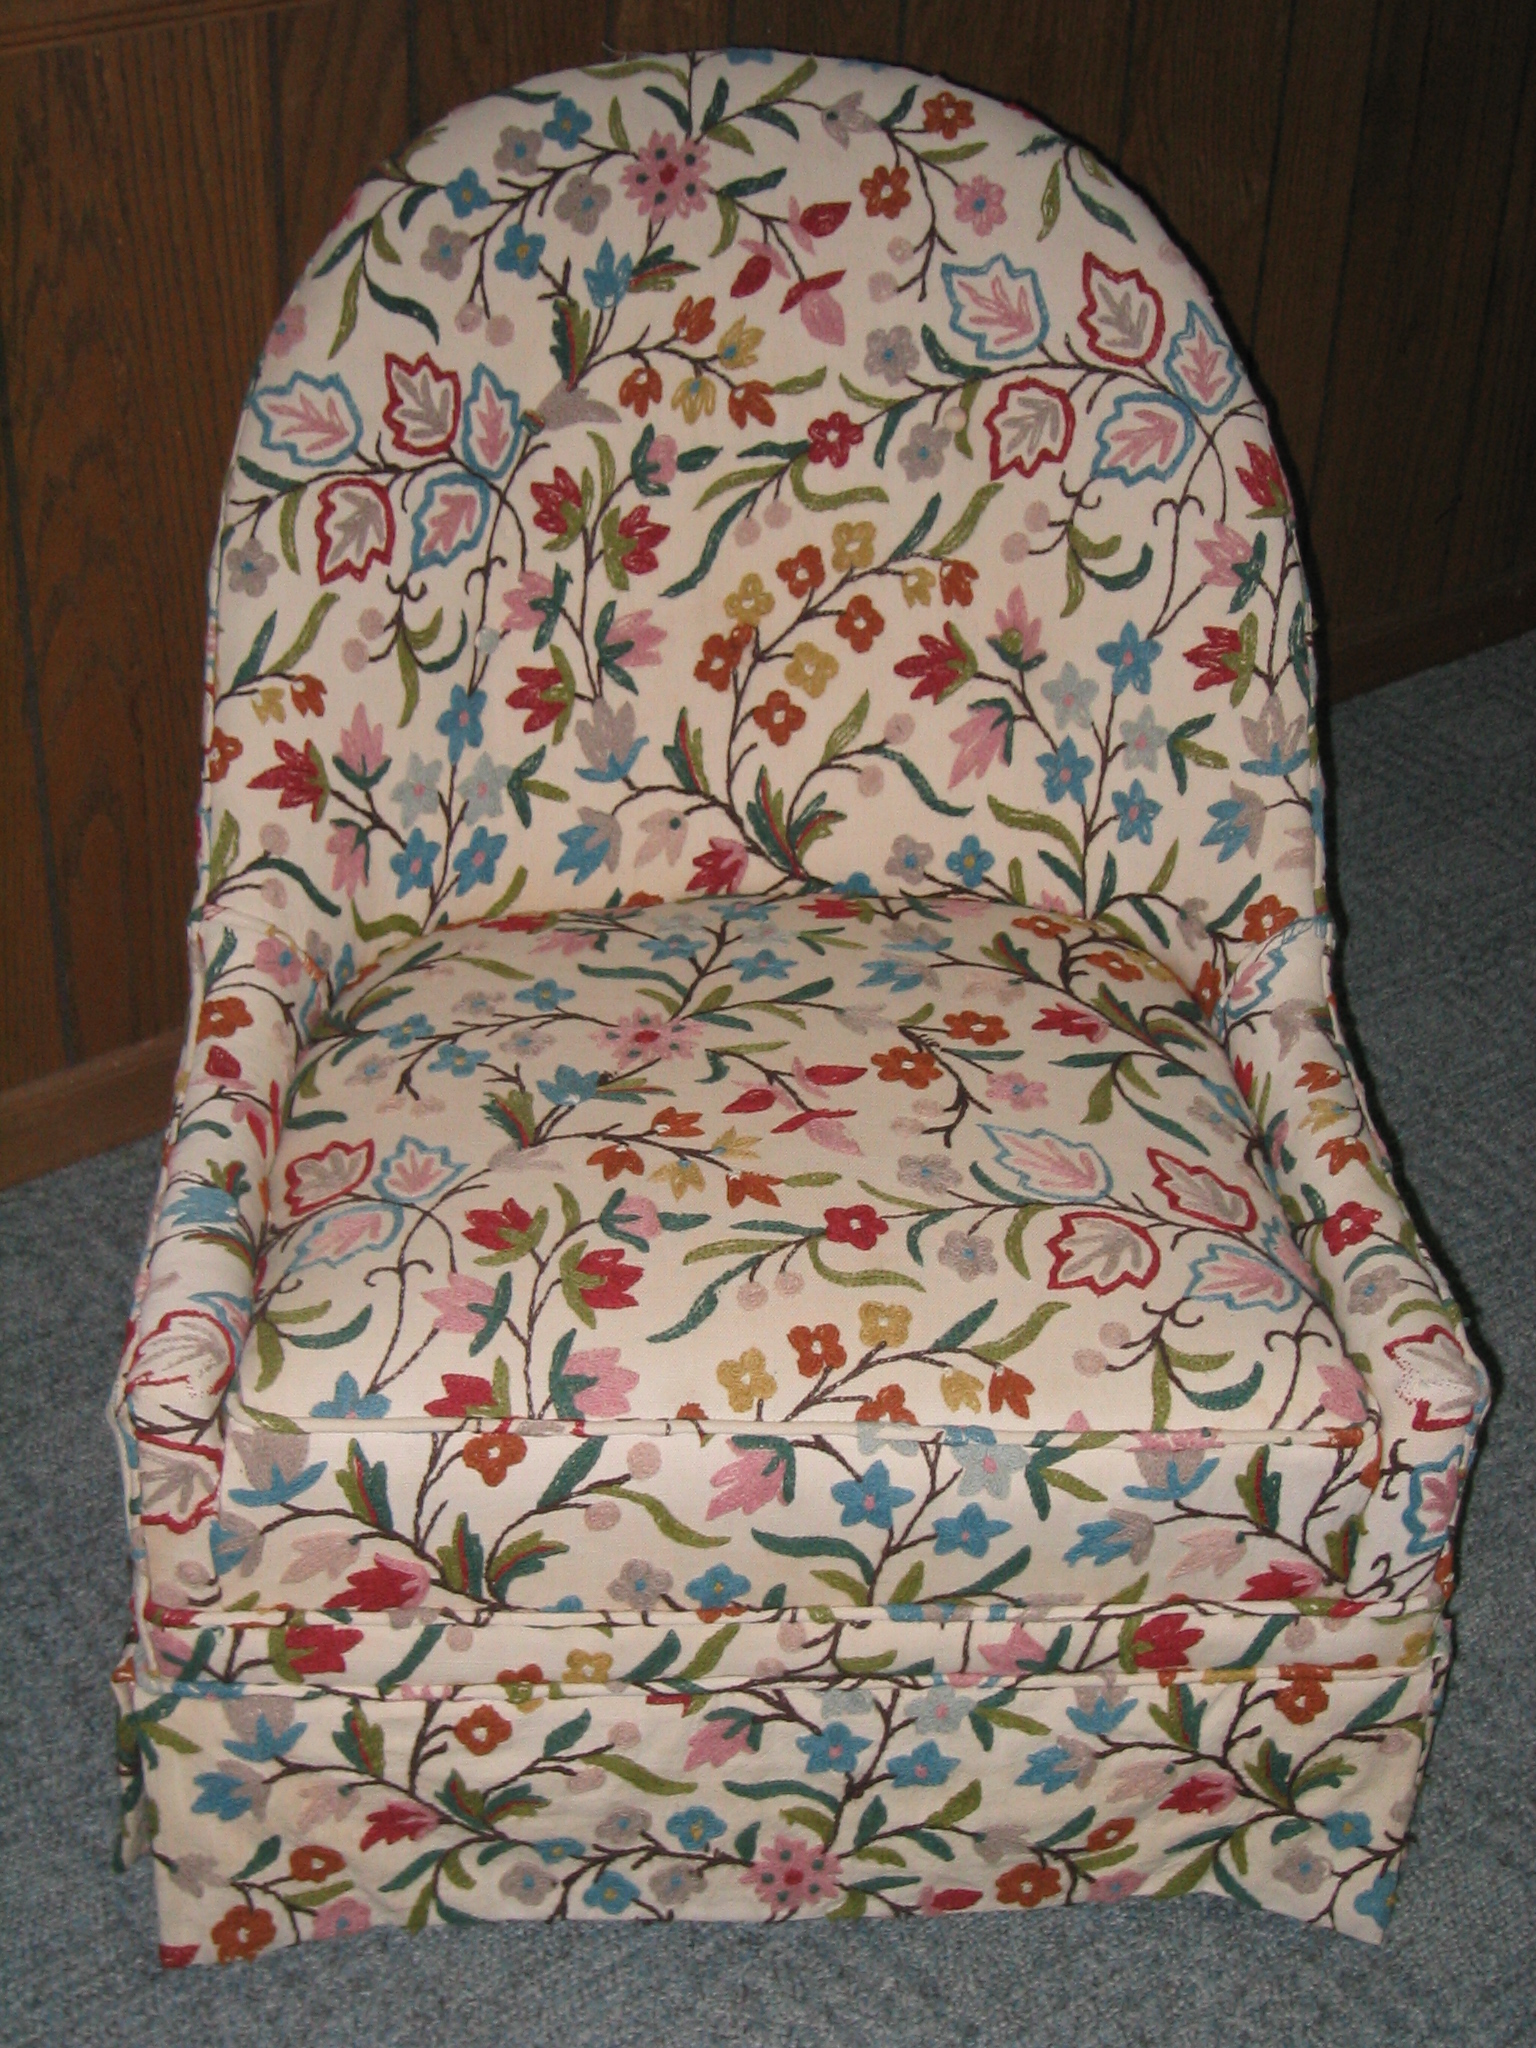 chair1